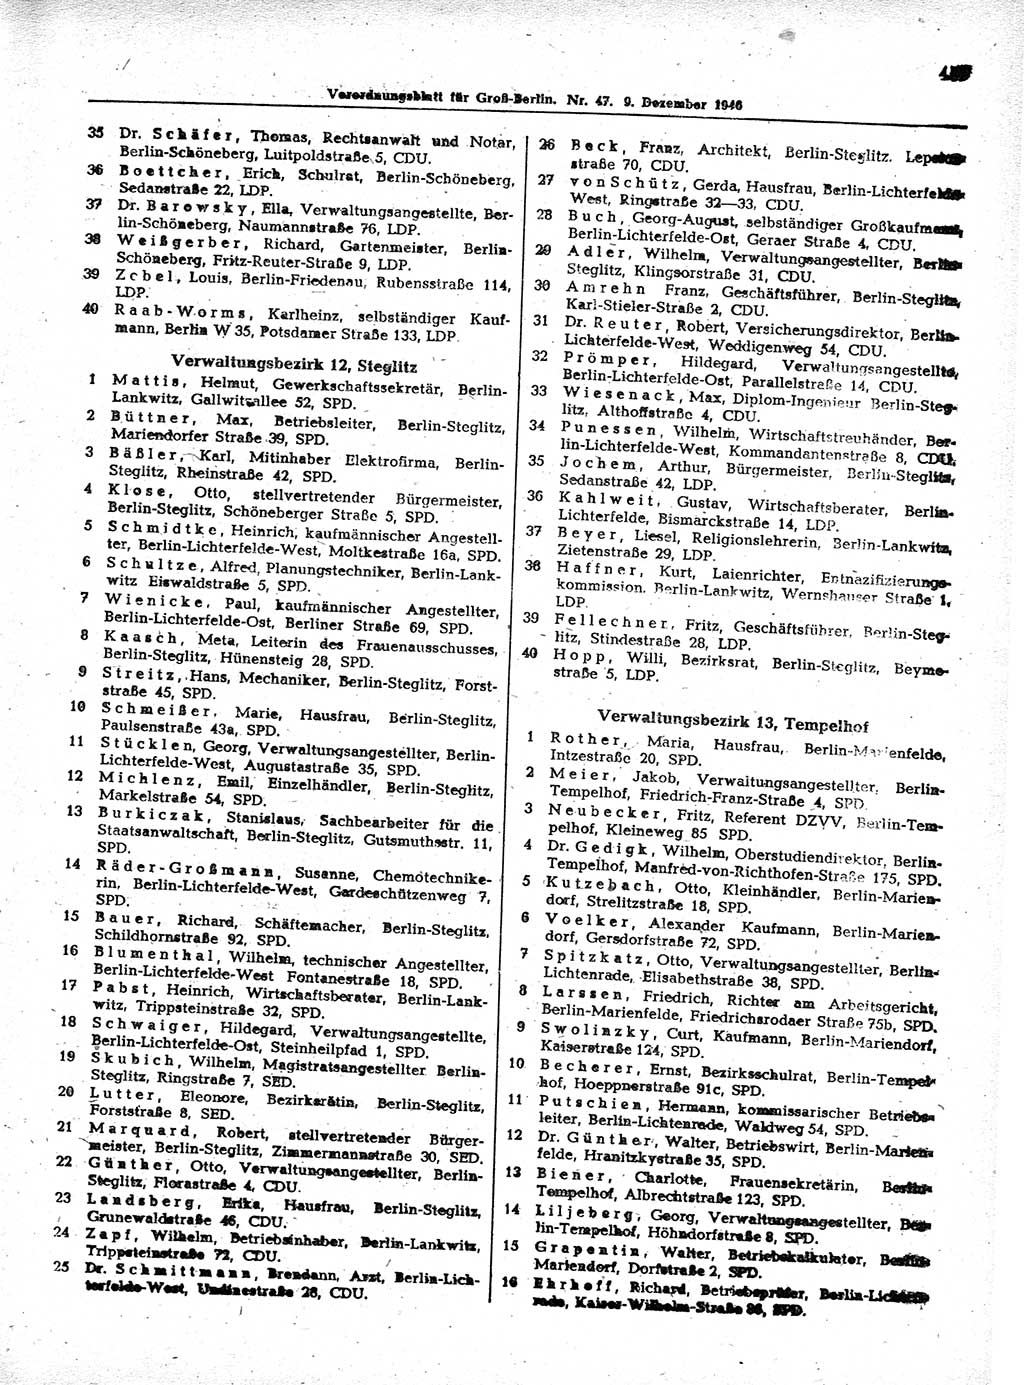 Verordnungsblatt (VOBl.) der Stadt Berlin, für Groß-Berlin 1946, Seite 455 (VOBl. Bln. 1946, S. 455)